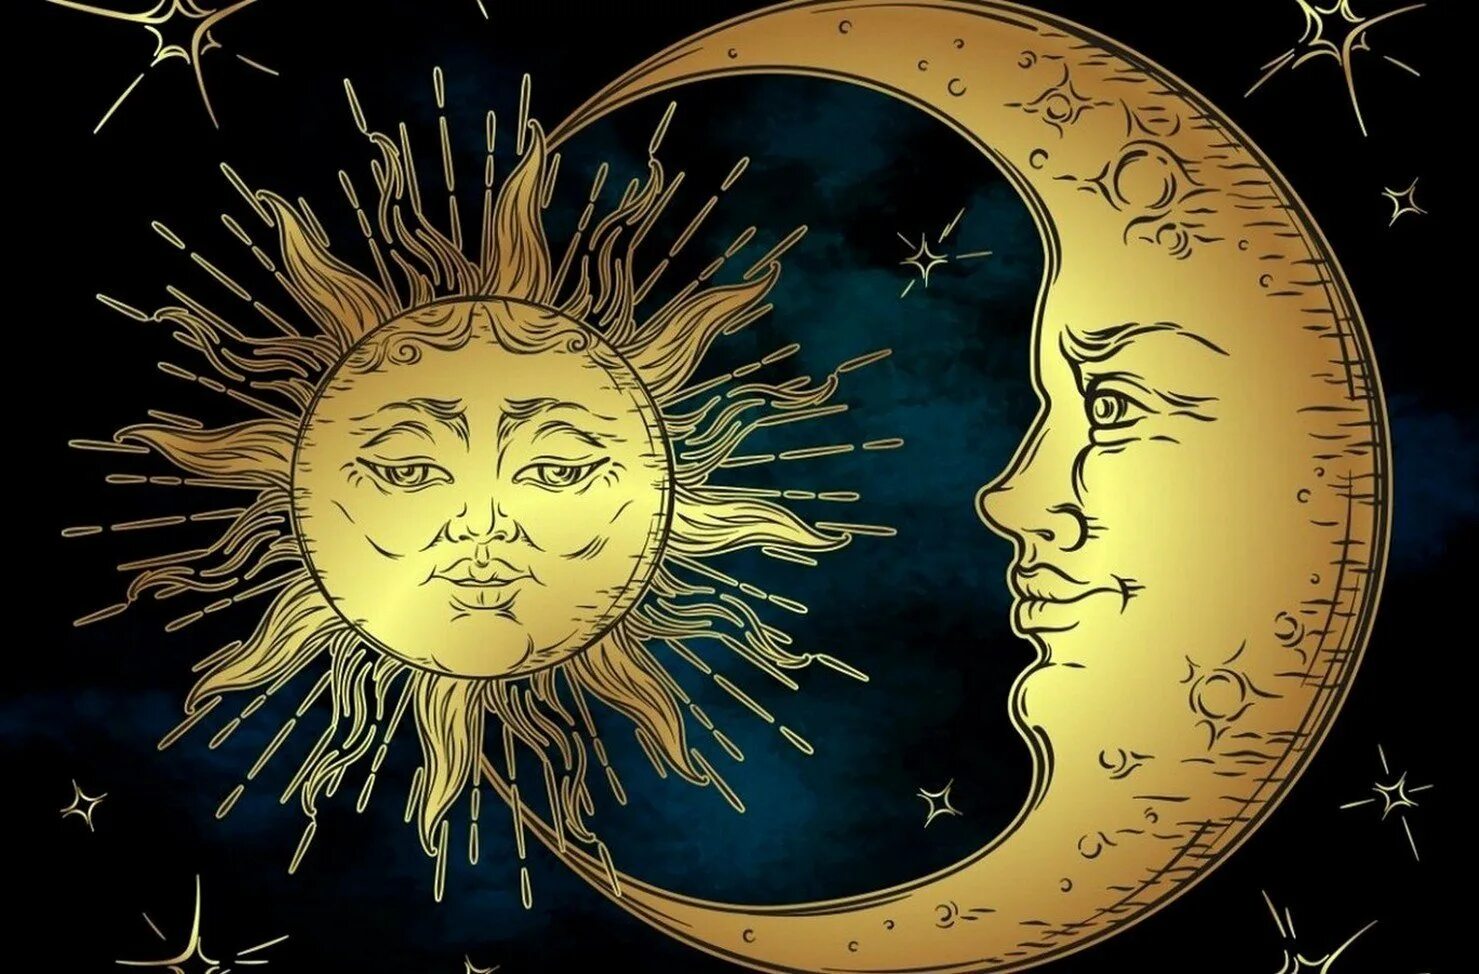 Солнце и Луна. Kjcywt b Keyf. Изображение солнца и Луны. Чолйе и Луна.